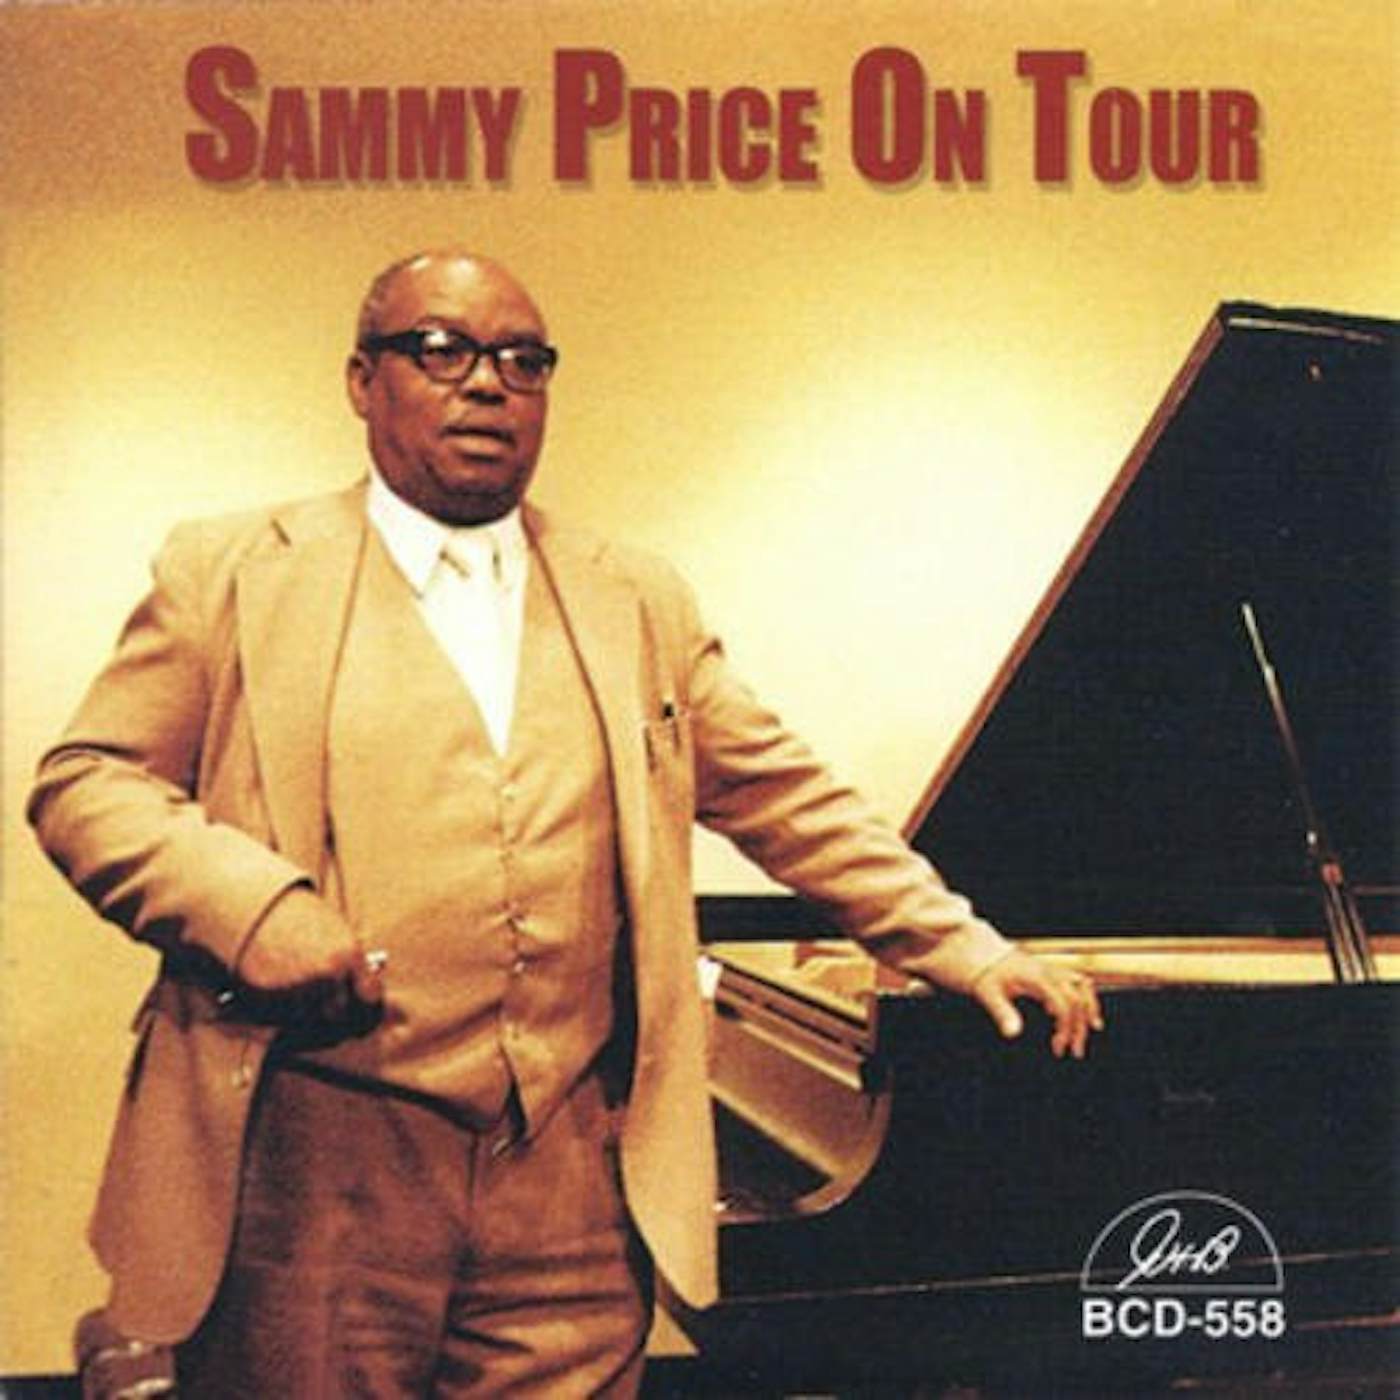 SAMMY PRICE ON TOUR CD